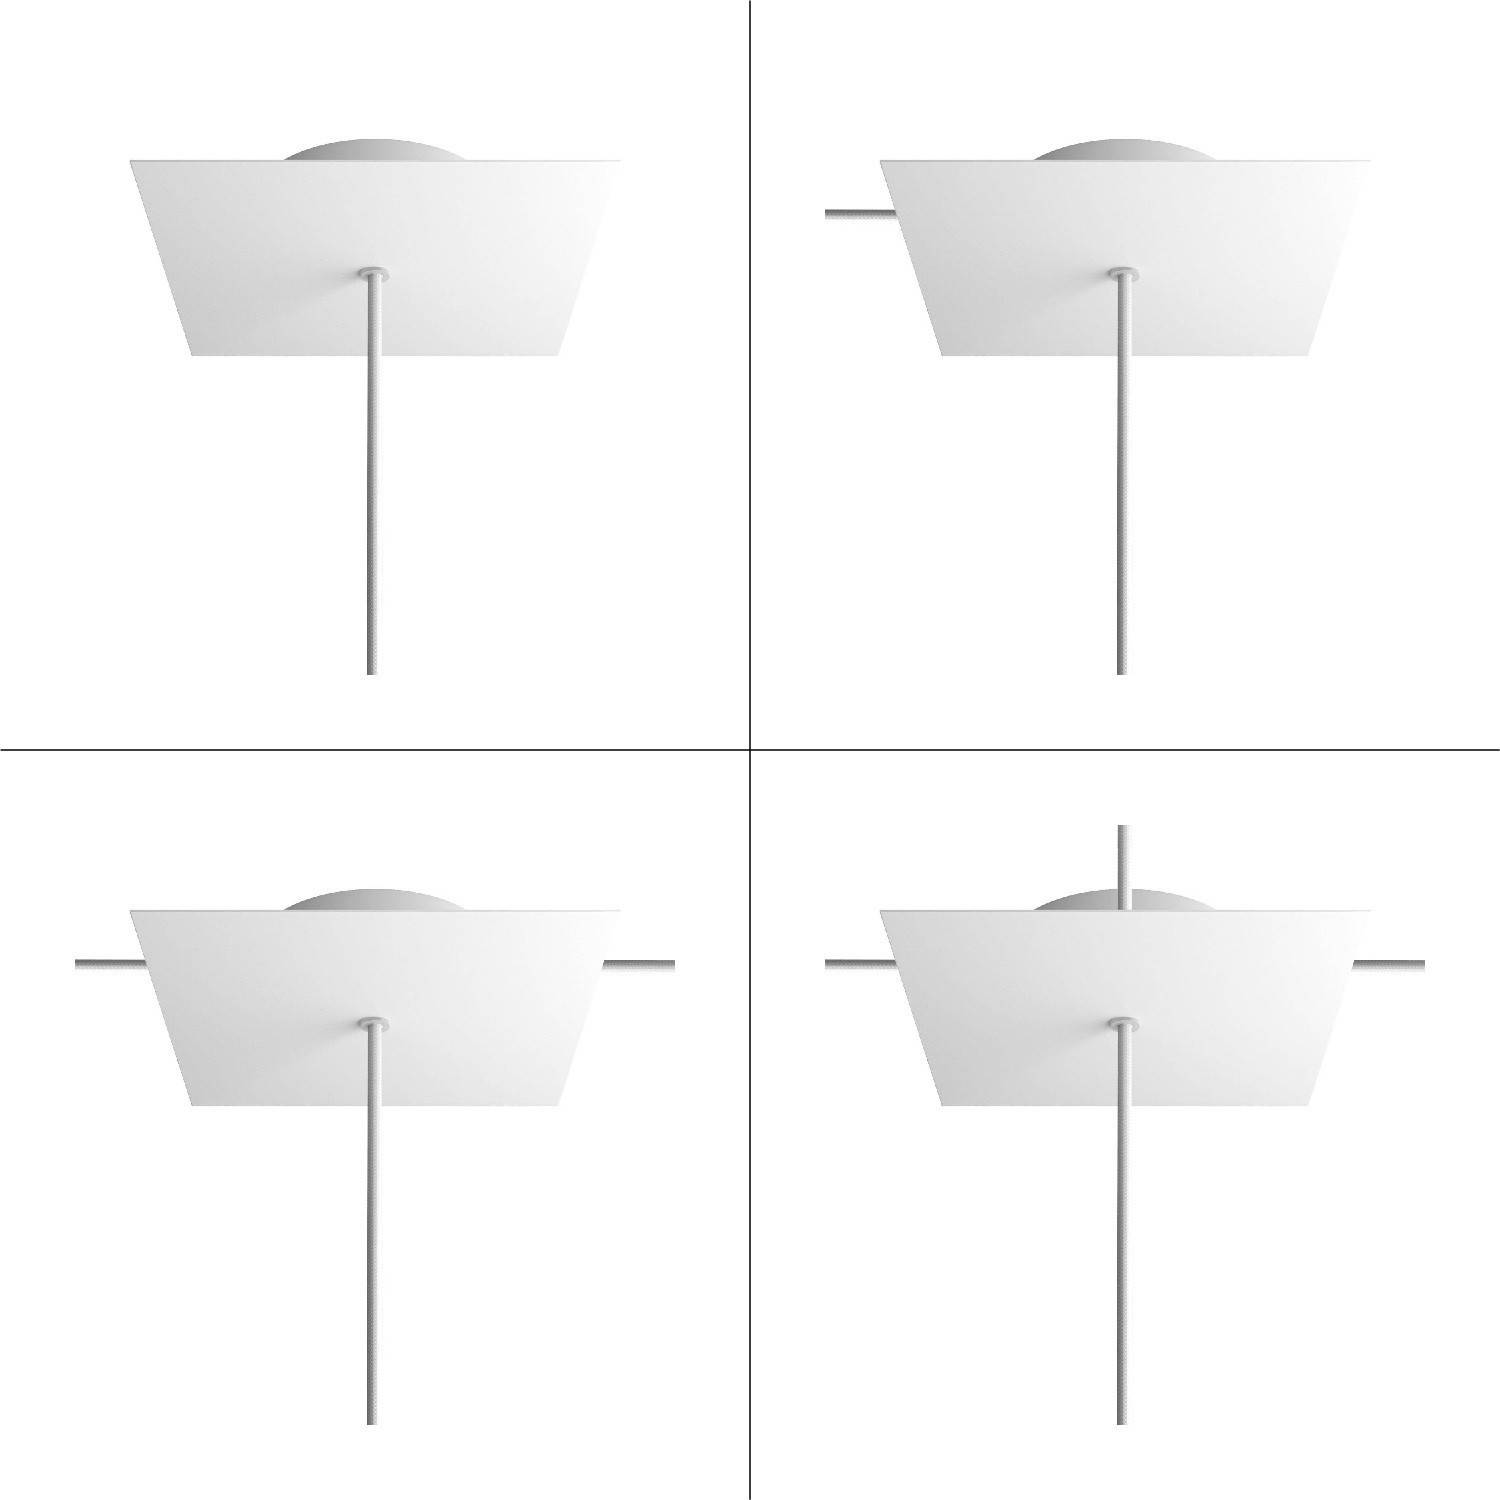 Roza pătrată cu un orificiu central și patru orificii laterale, diametru 200 mm.